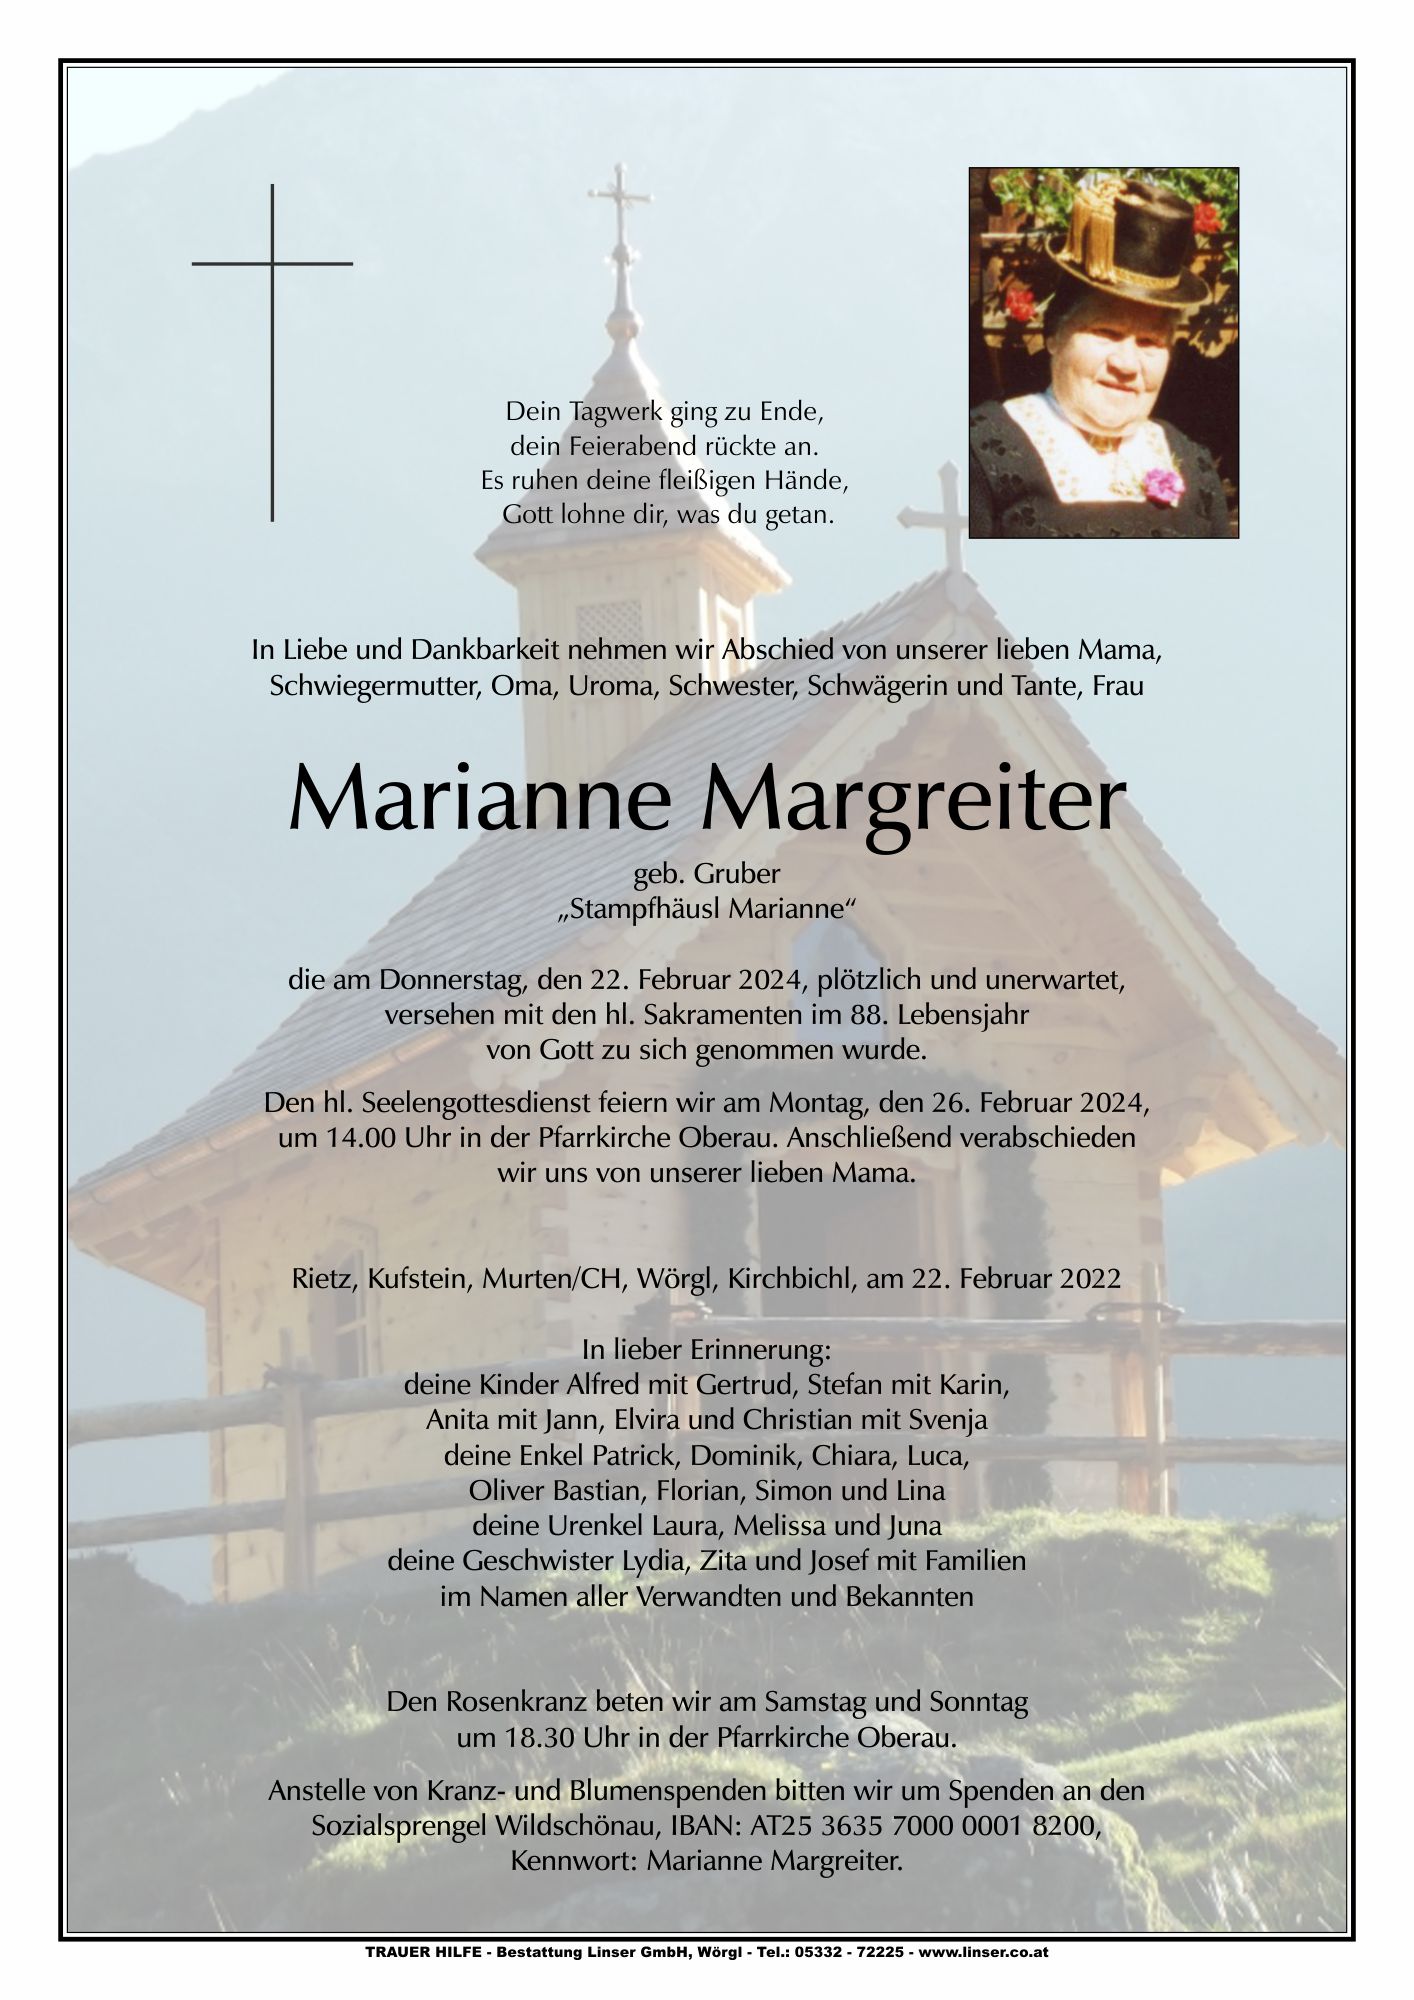 Marianne Margreiter